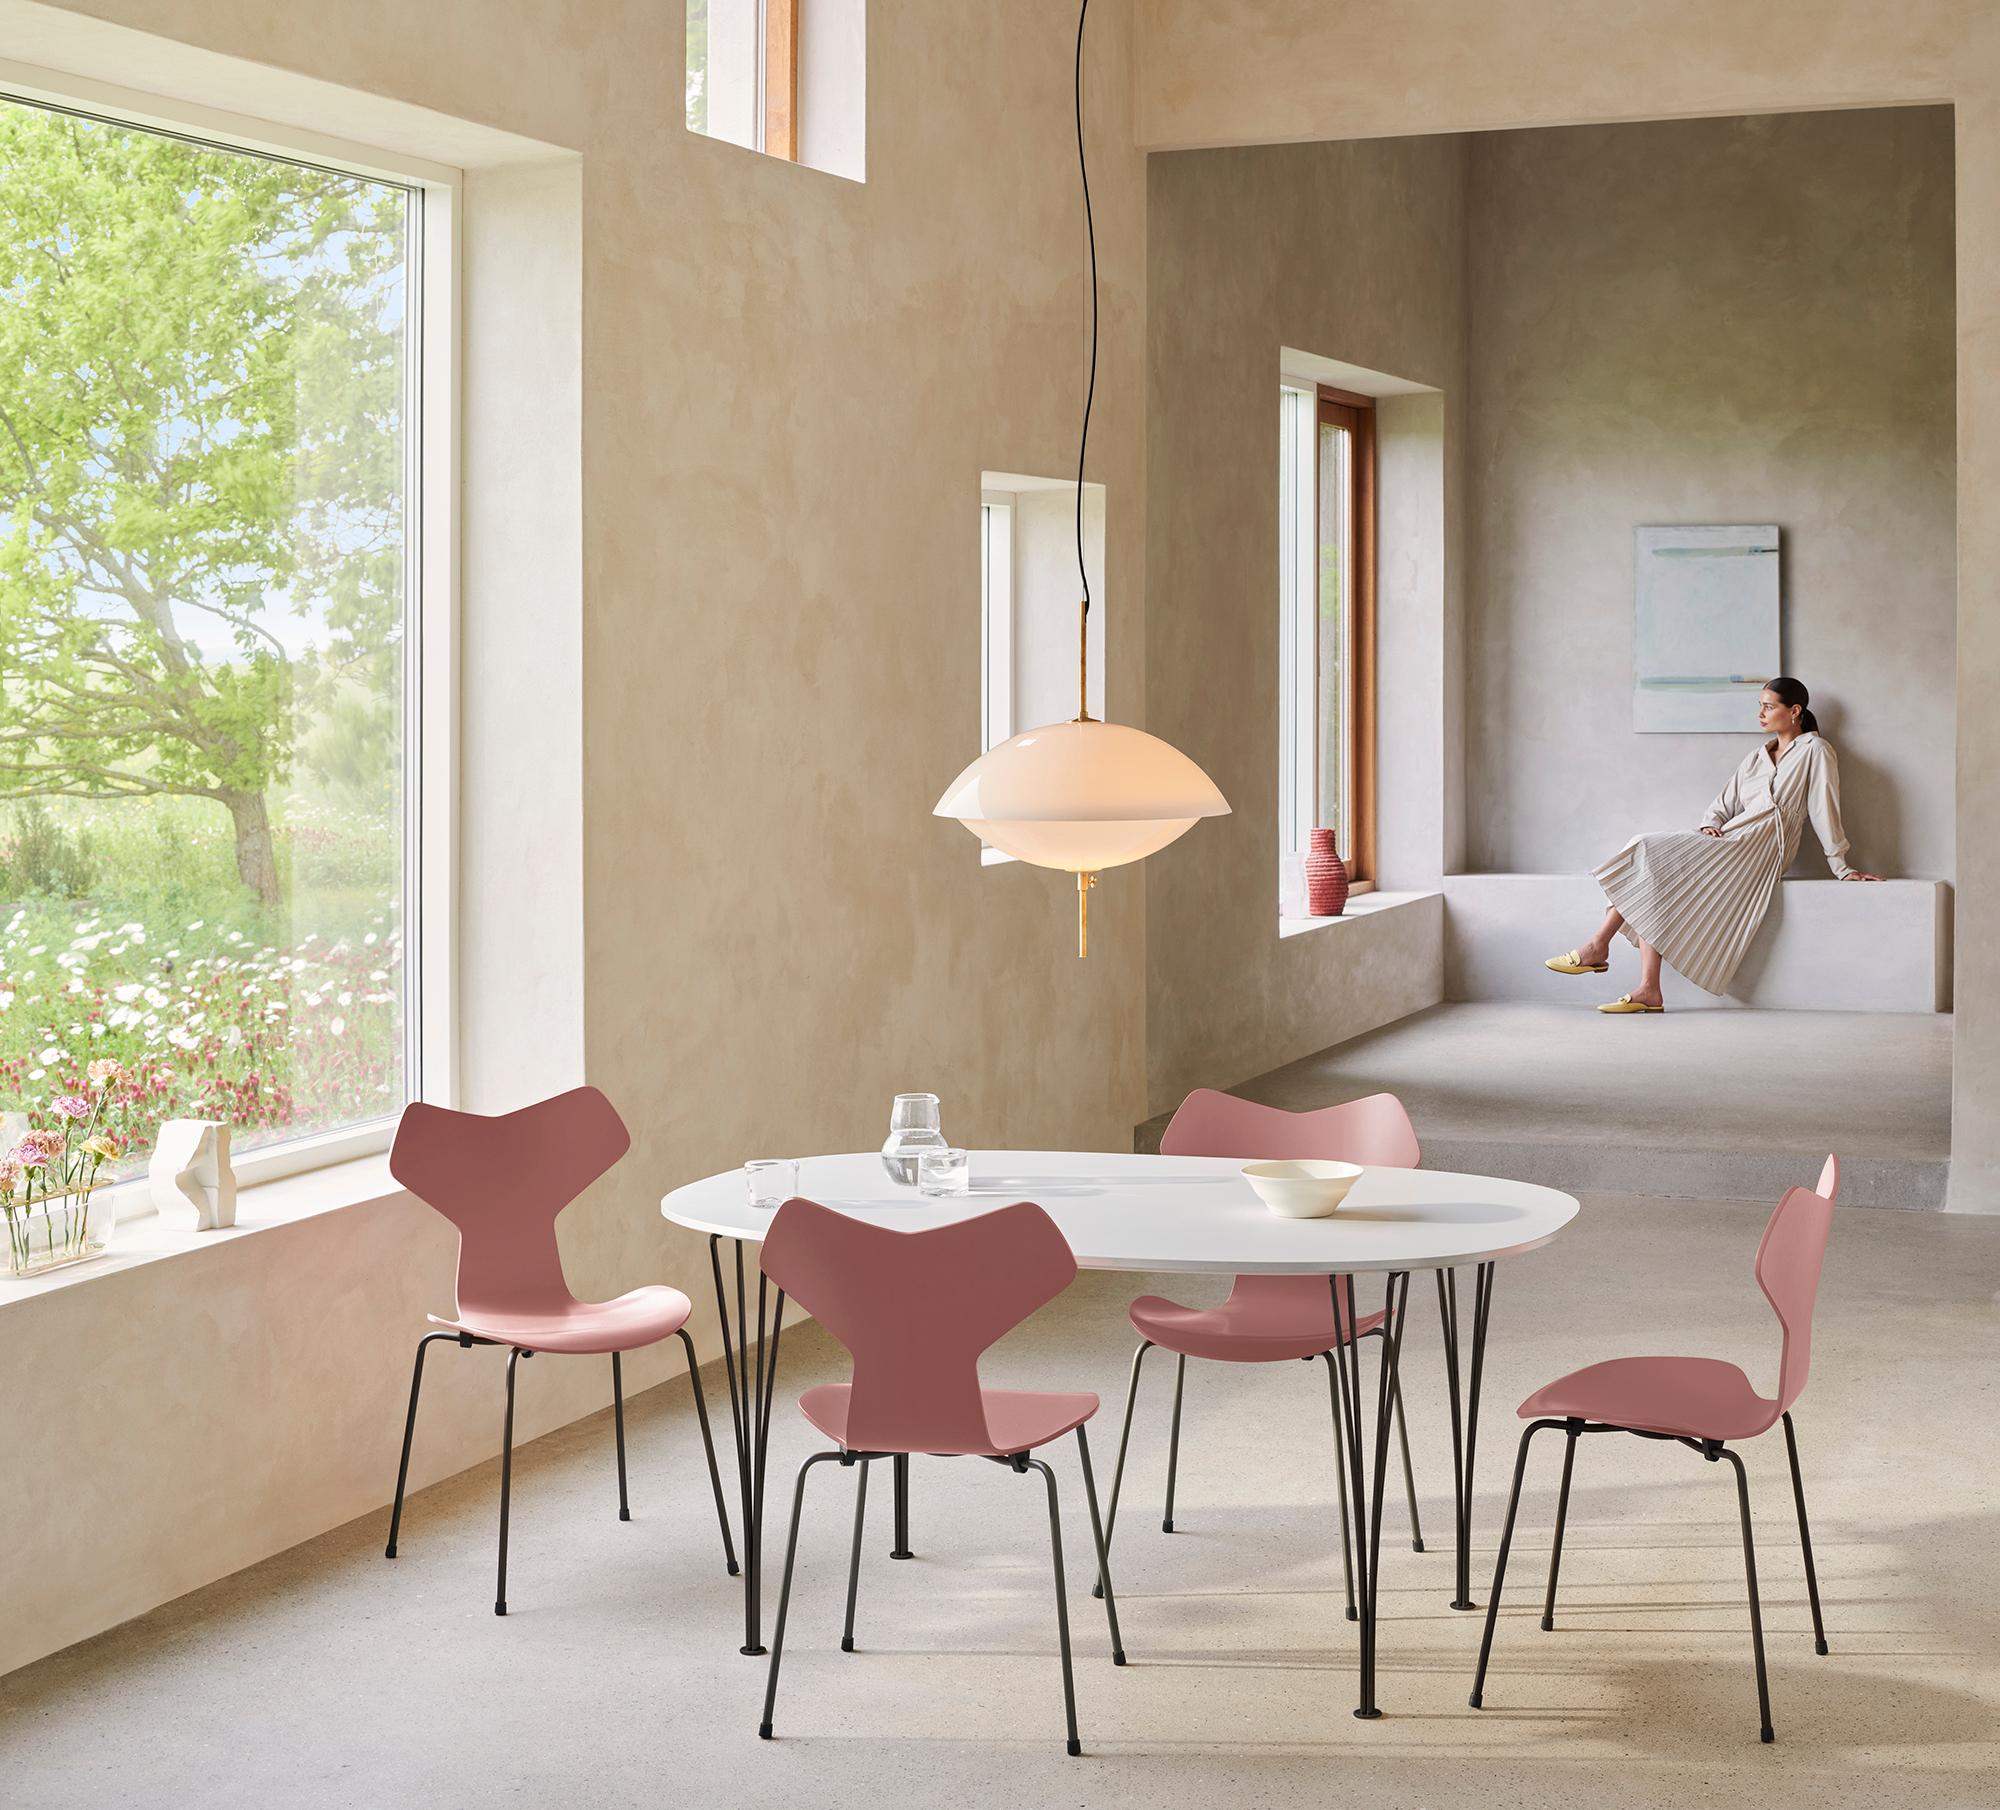 Arne Jacobsen 'Grand Prix' Stuhl für Fritz Hansen in farbigem Furnier.

Fritz Hansen wurde 1872 gegründet und ist zum Synonym für legendäres dänisches Design geworden. Die Marke kombiniert zeitlose Handwerkskunst mit einem Schwerpunkt auf